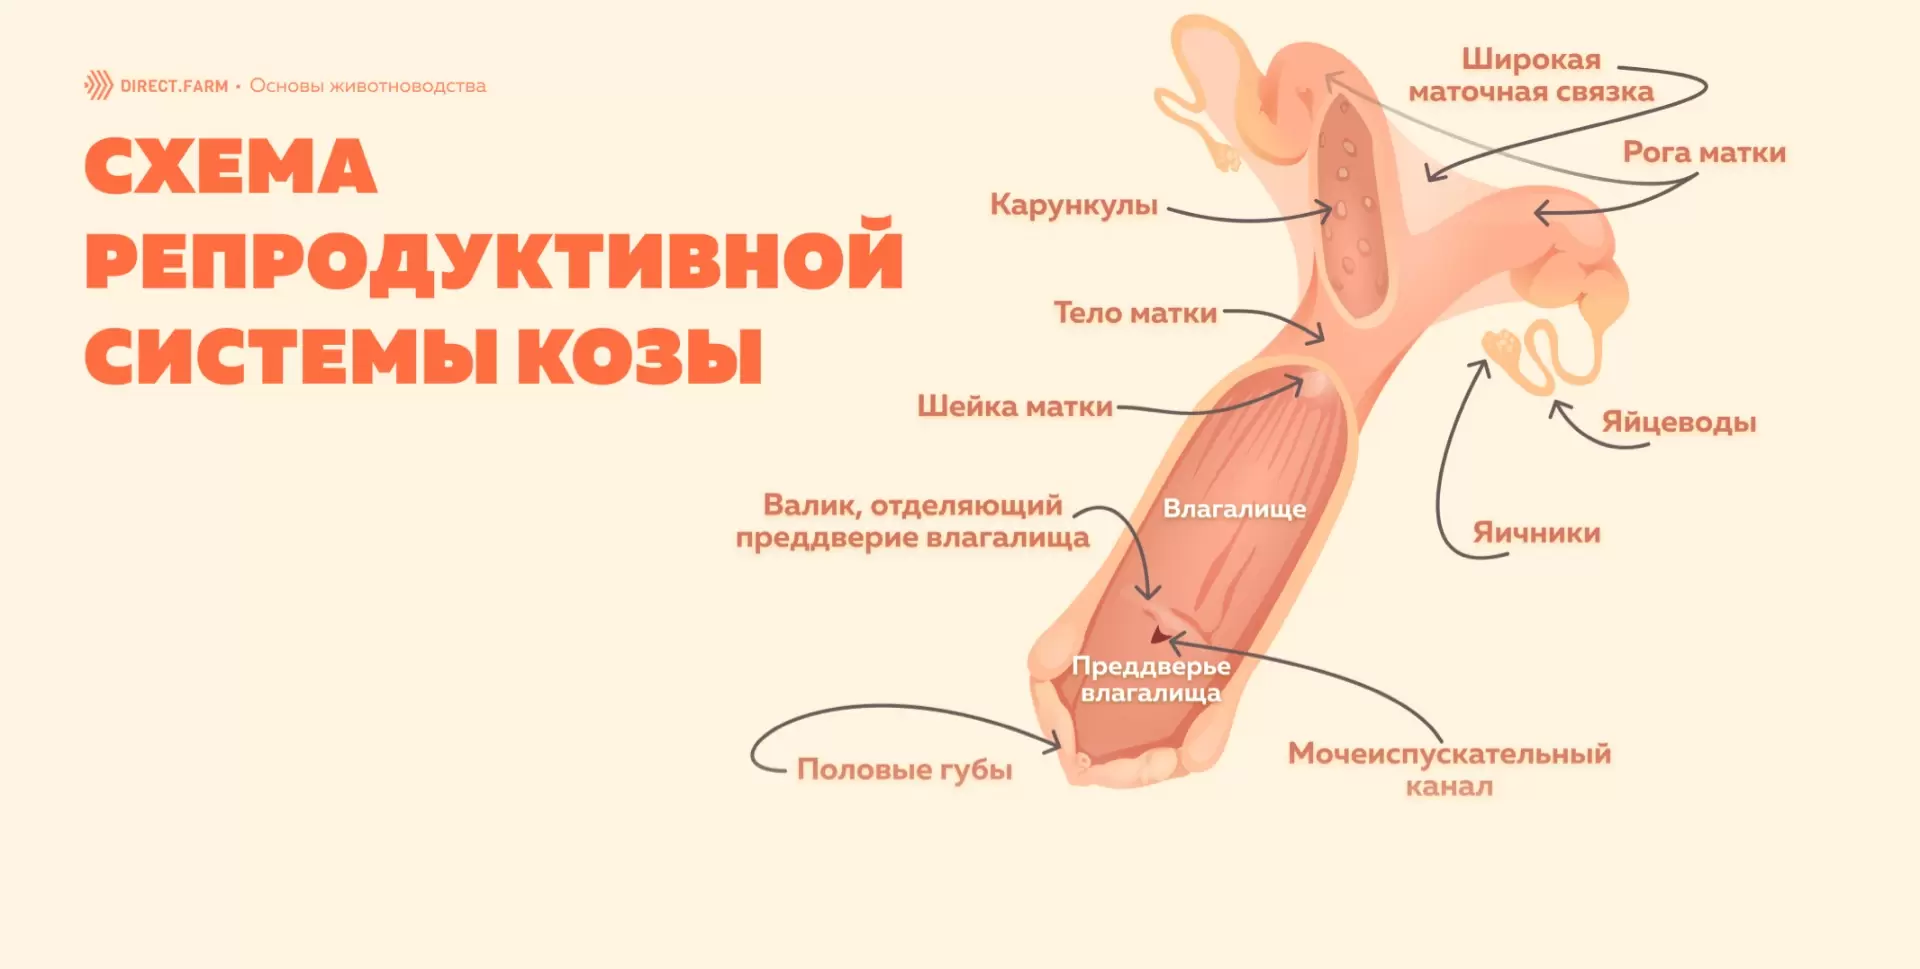 Анатомия женщины (строение женских половых органов) – полезные материалы altaifish.ru